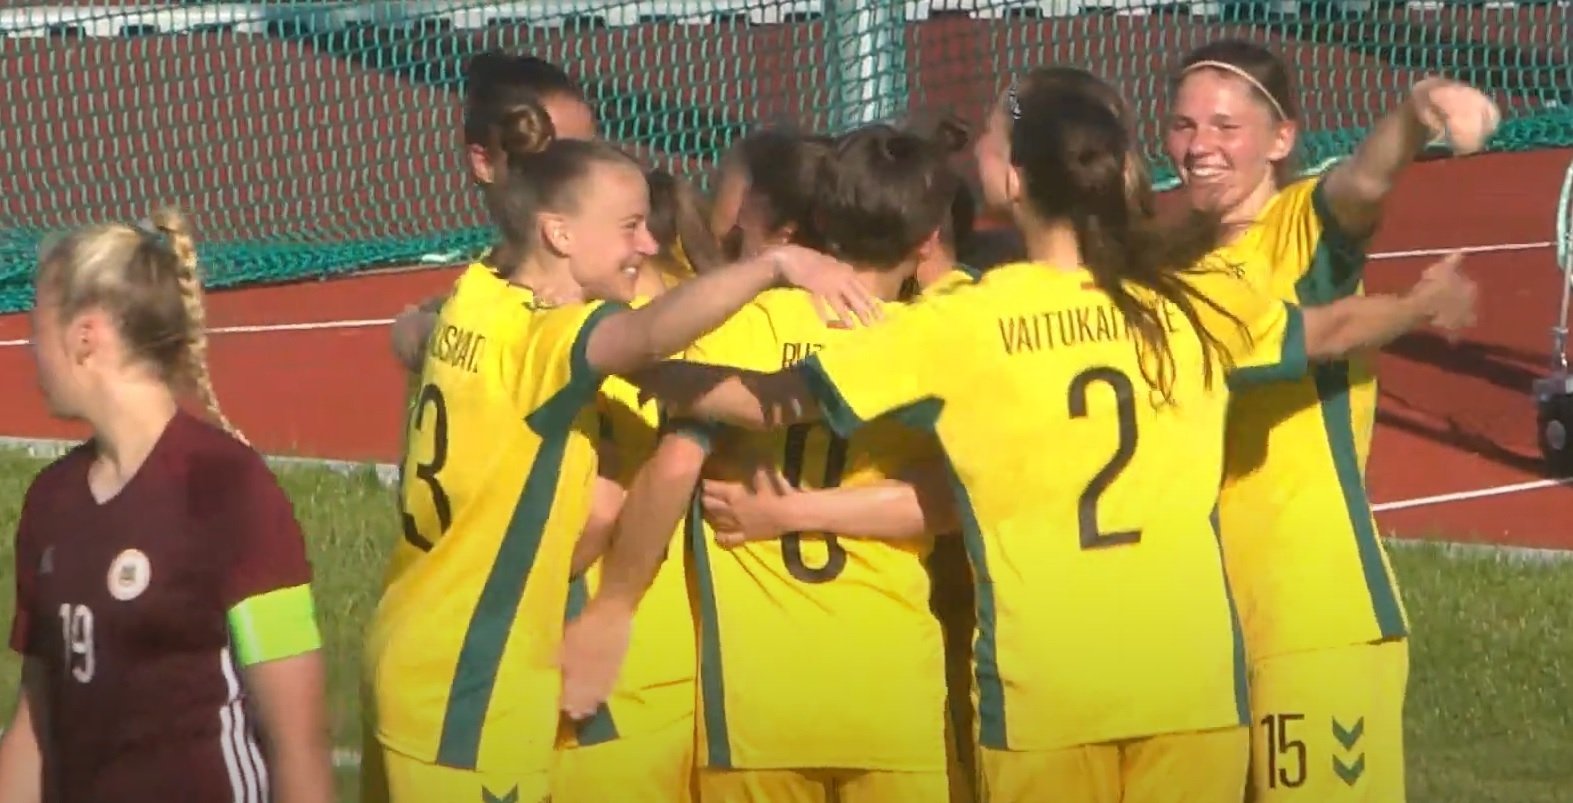 Annunciata la composizione della squadra di calcio femminile della Lituania per la partita contro l’Italia